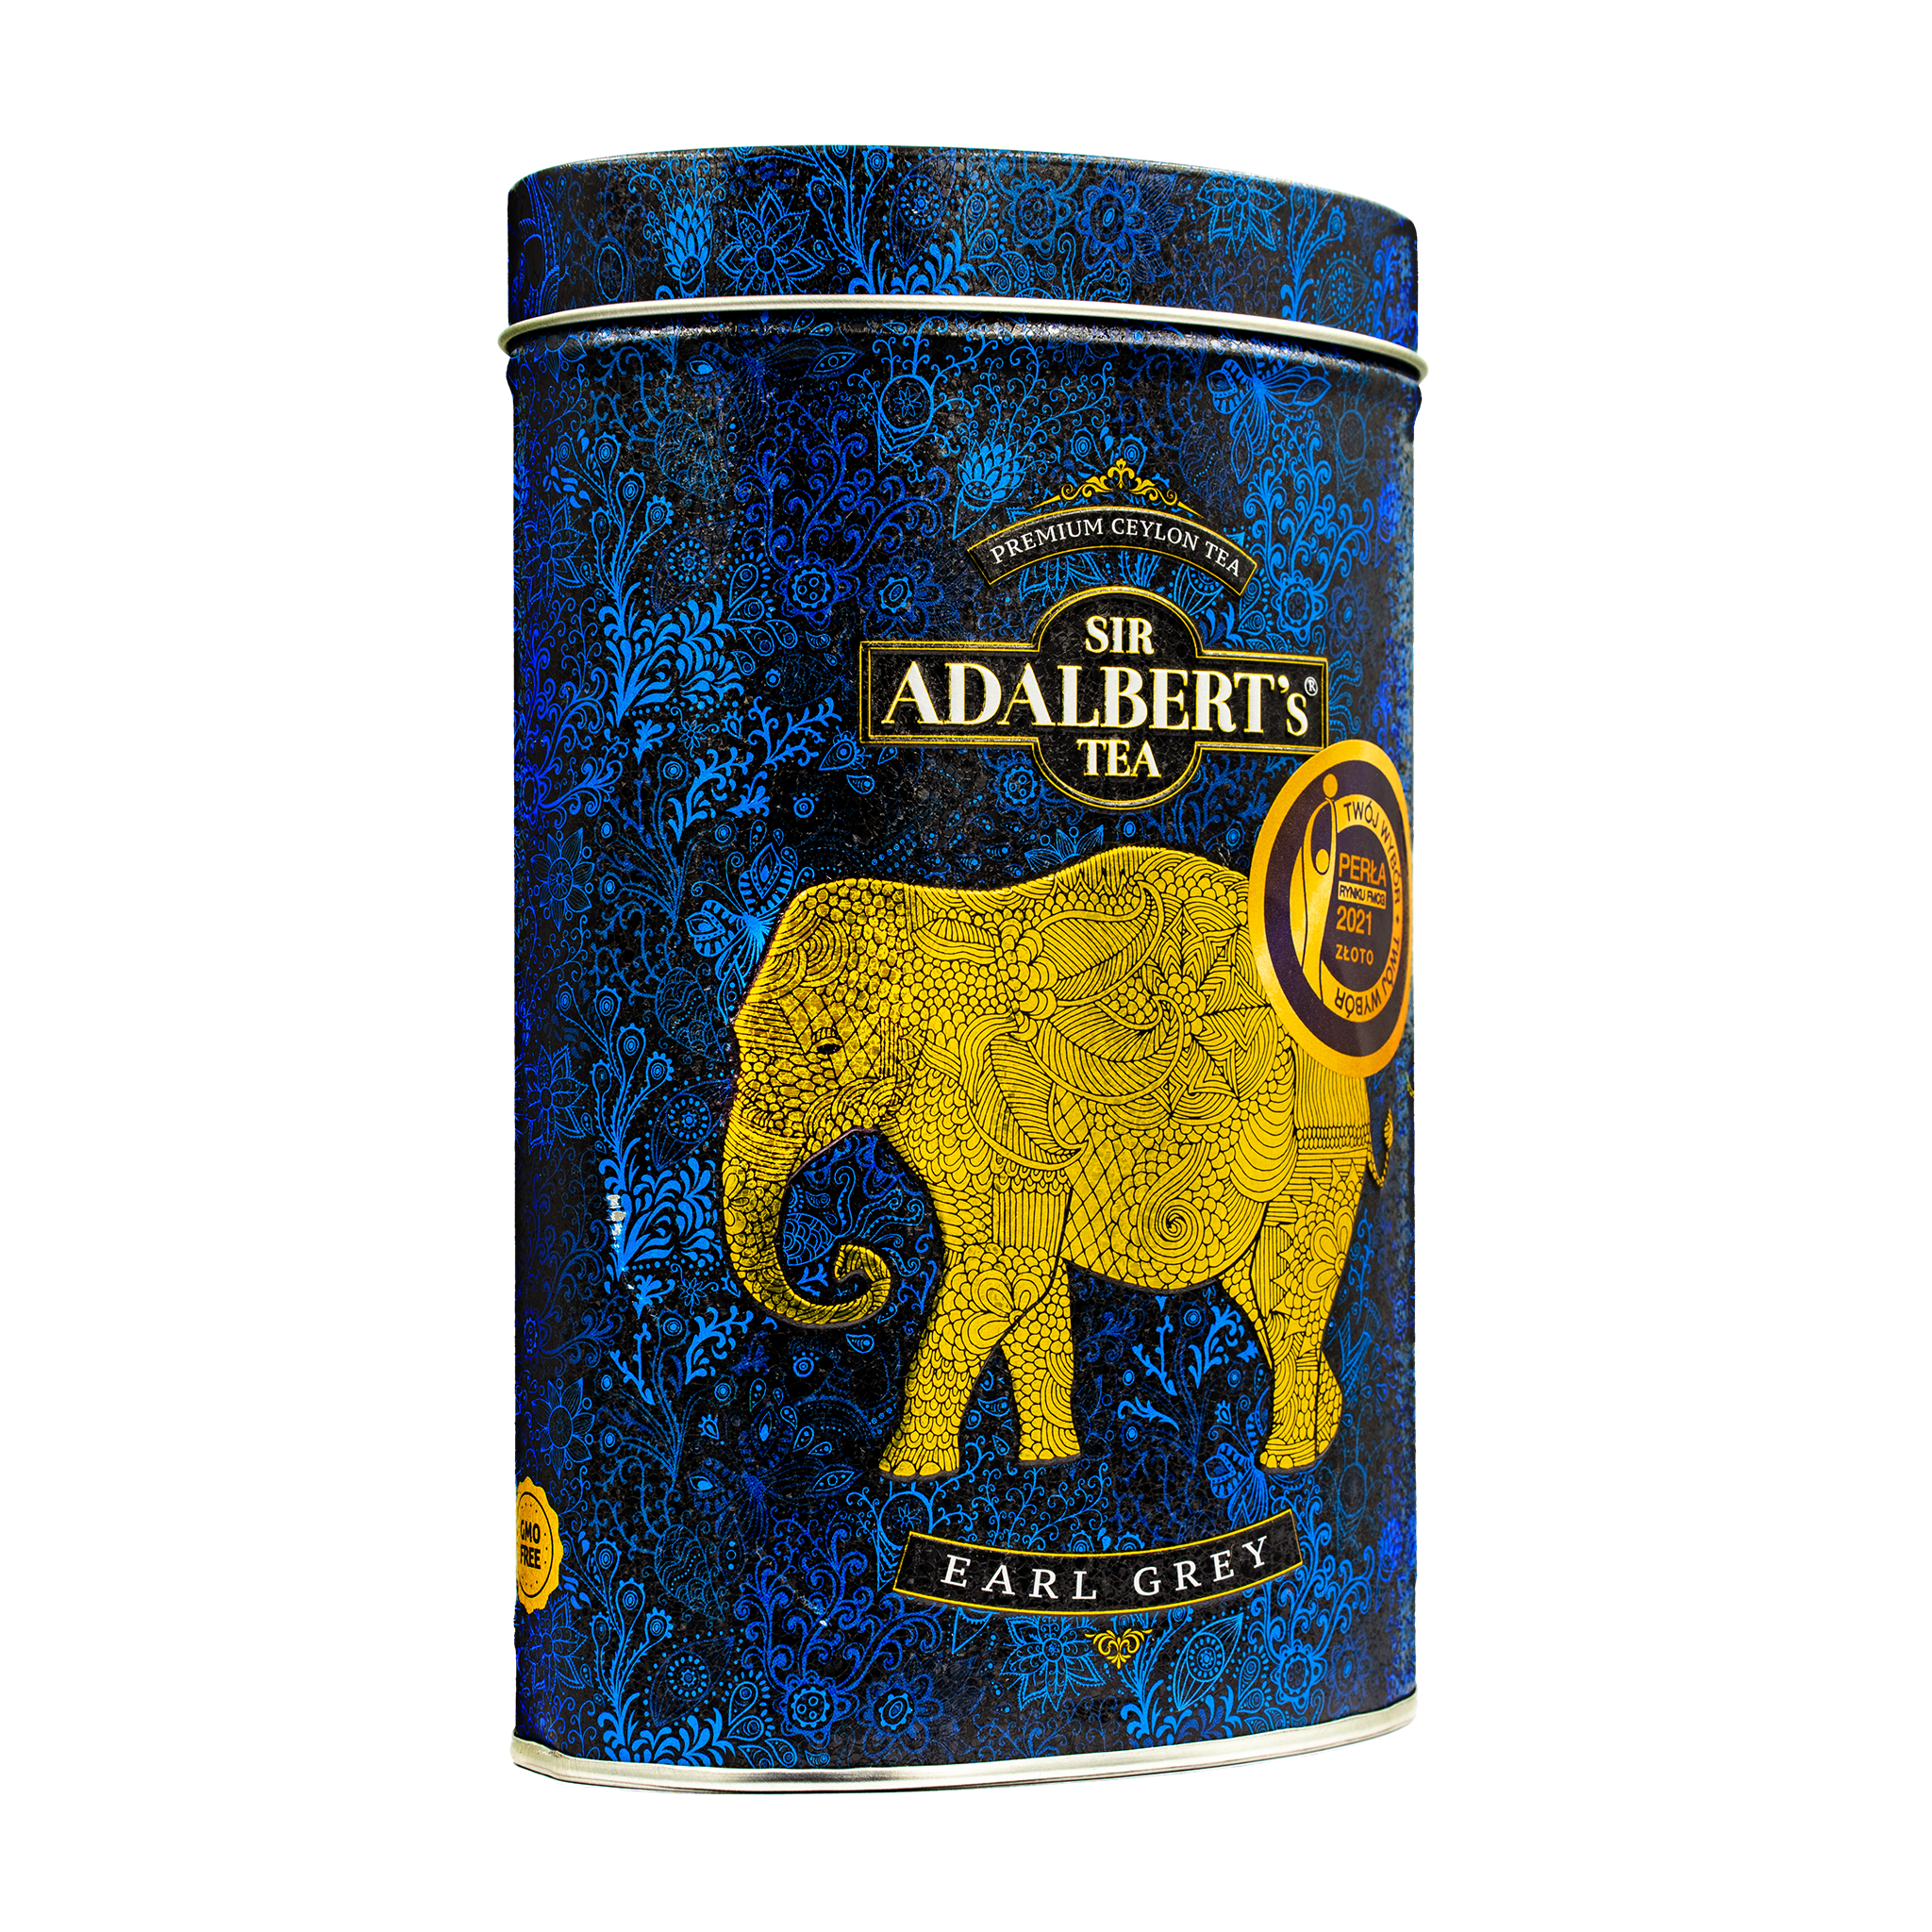 Adalbert's Tea EARL GREY - Liściasta 110g w puszce - Sir Adalbert's Tea persp